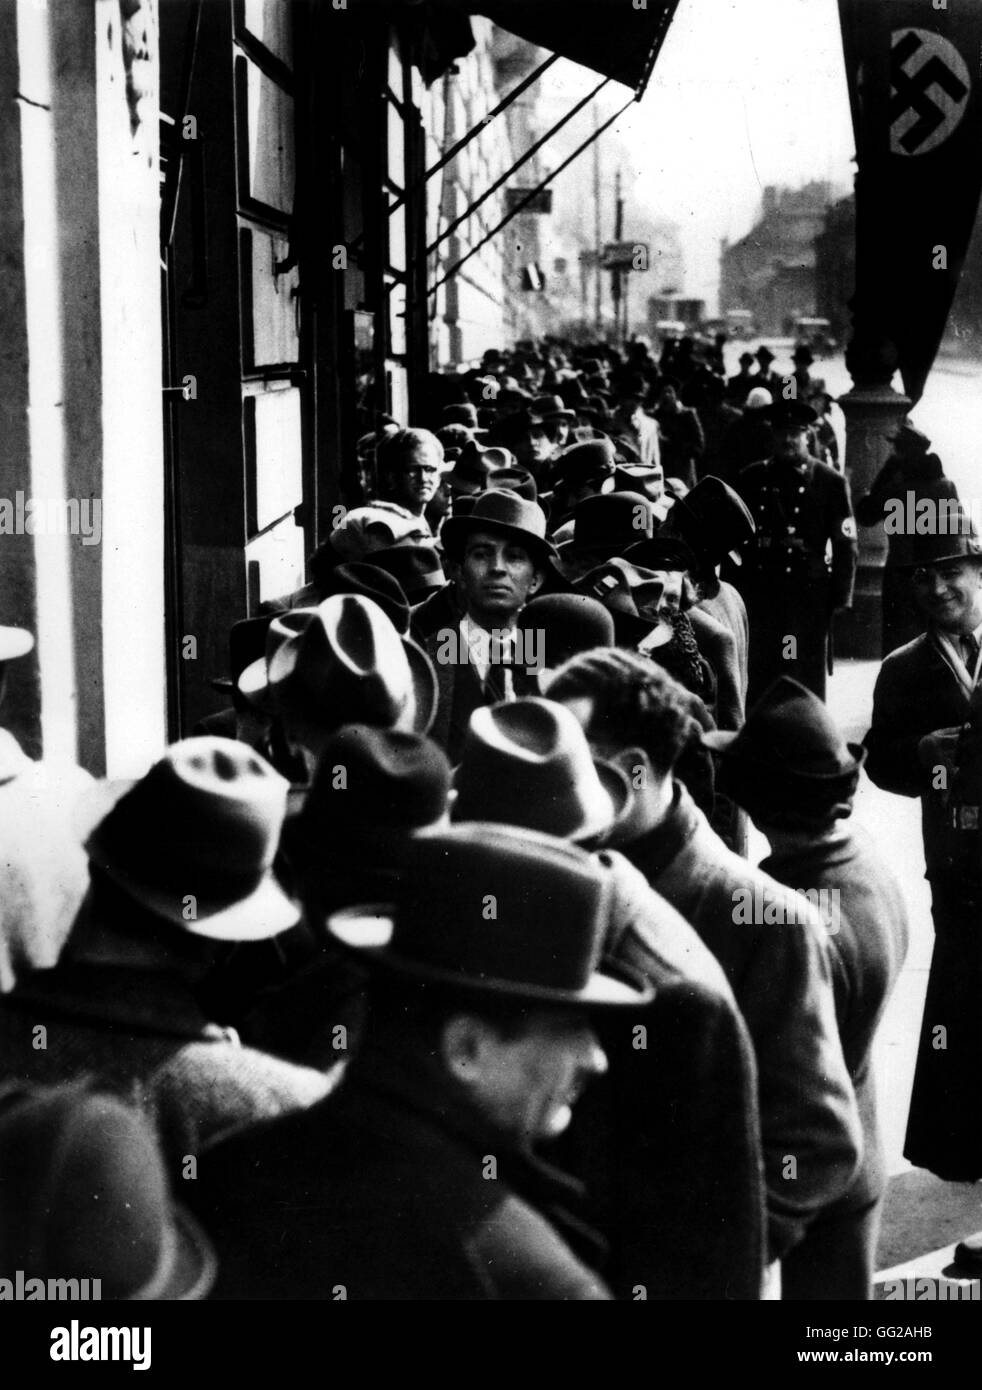 Vienna. Ebrei in linea, in attesa di ottenere un visto per la Polonia 1938 Austria Washington. Archivi Nazionali Foto Stock